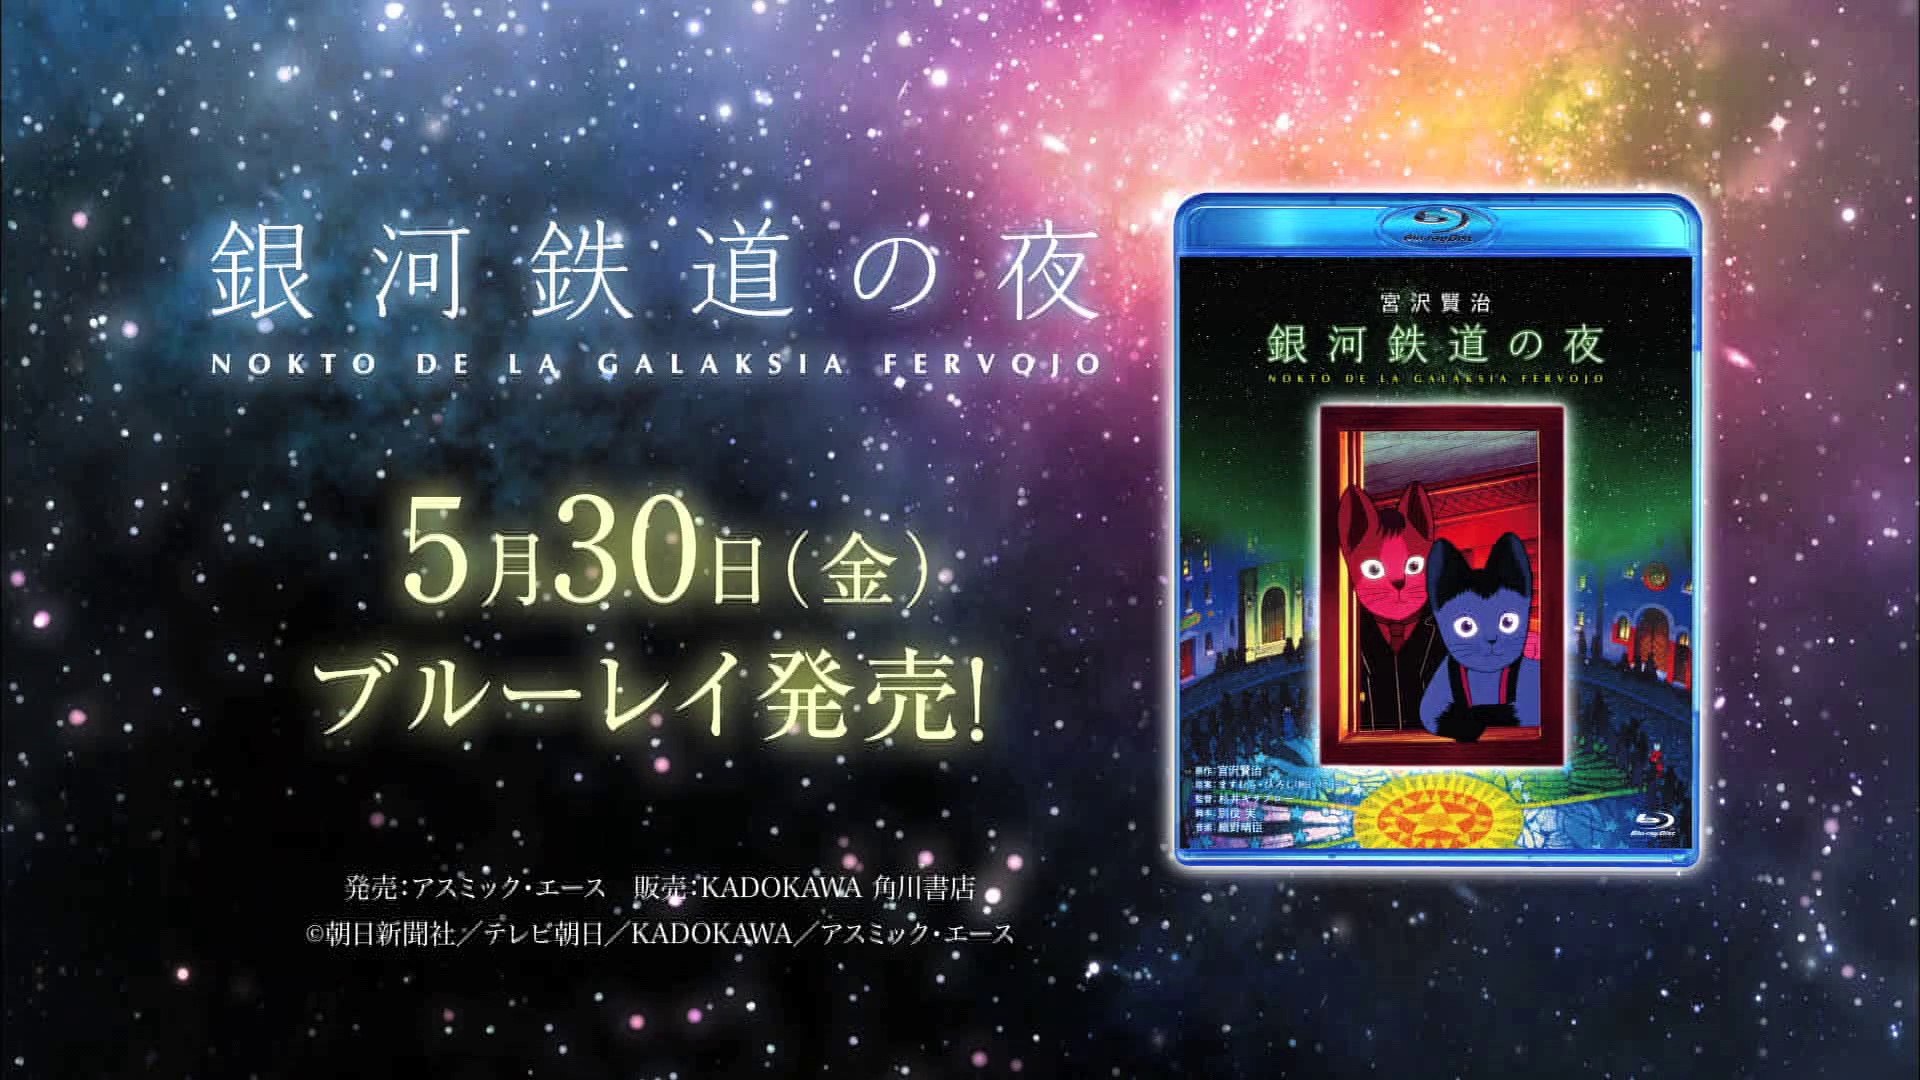 銀河鉄道の夜 Blu Ray発売cm 1080p Video Dailymotion